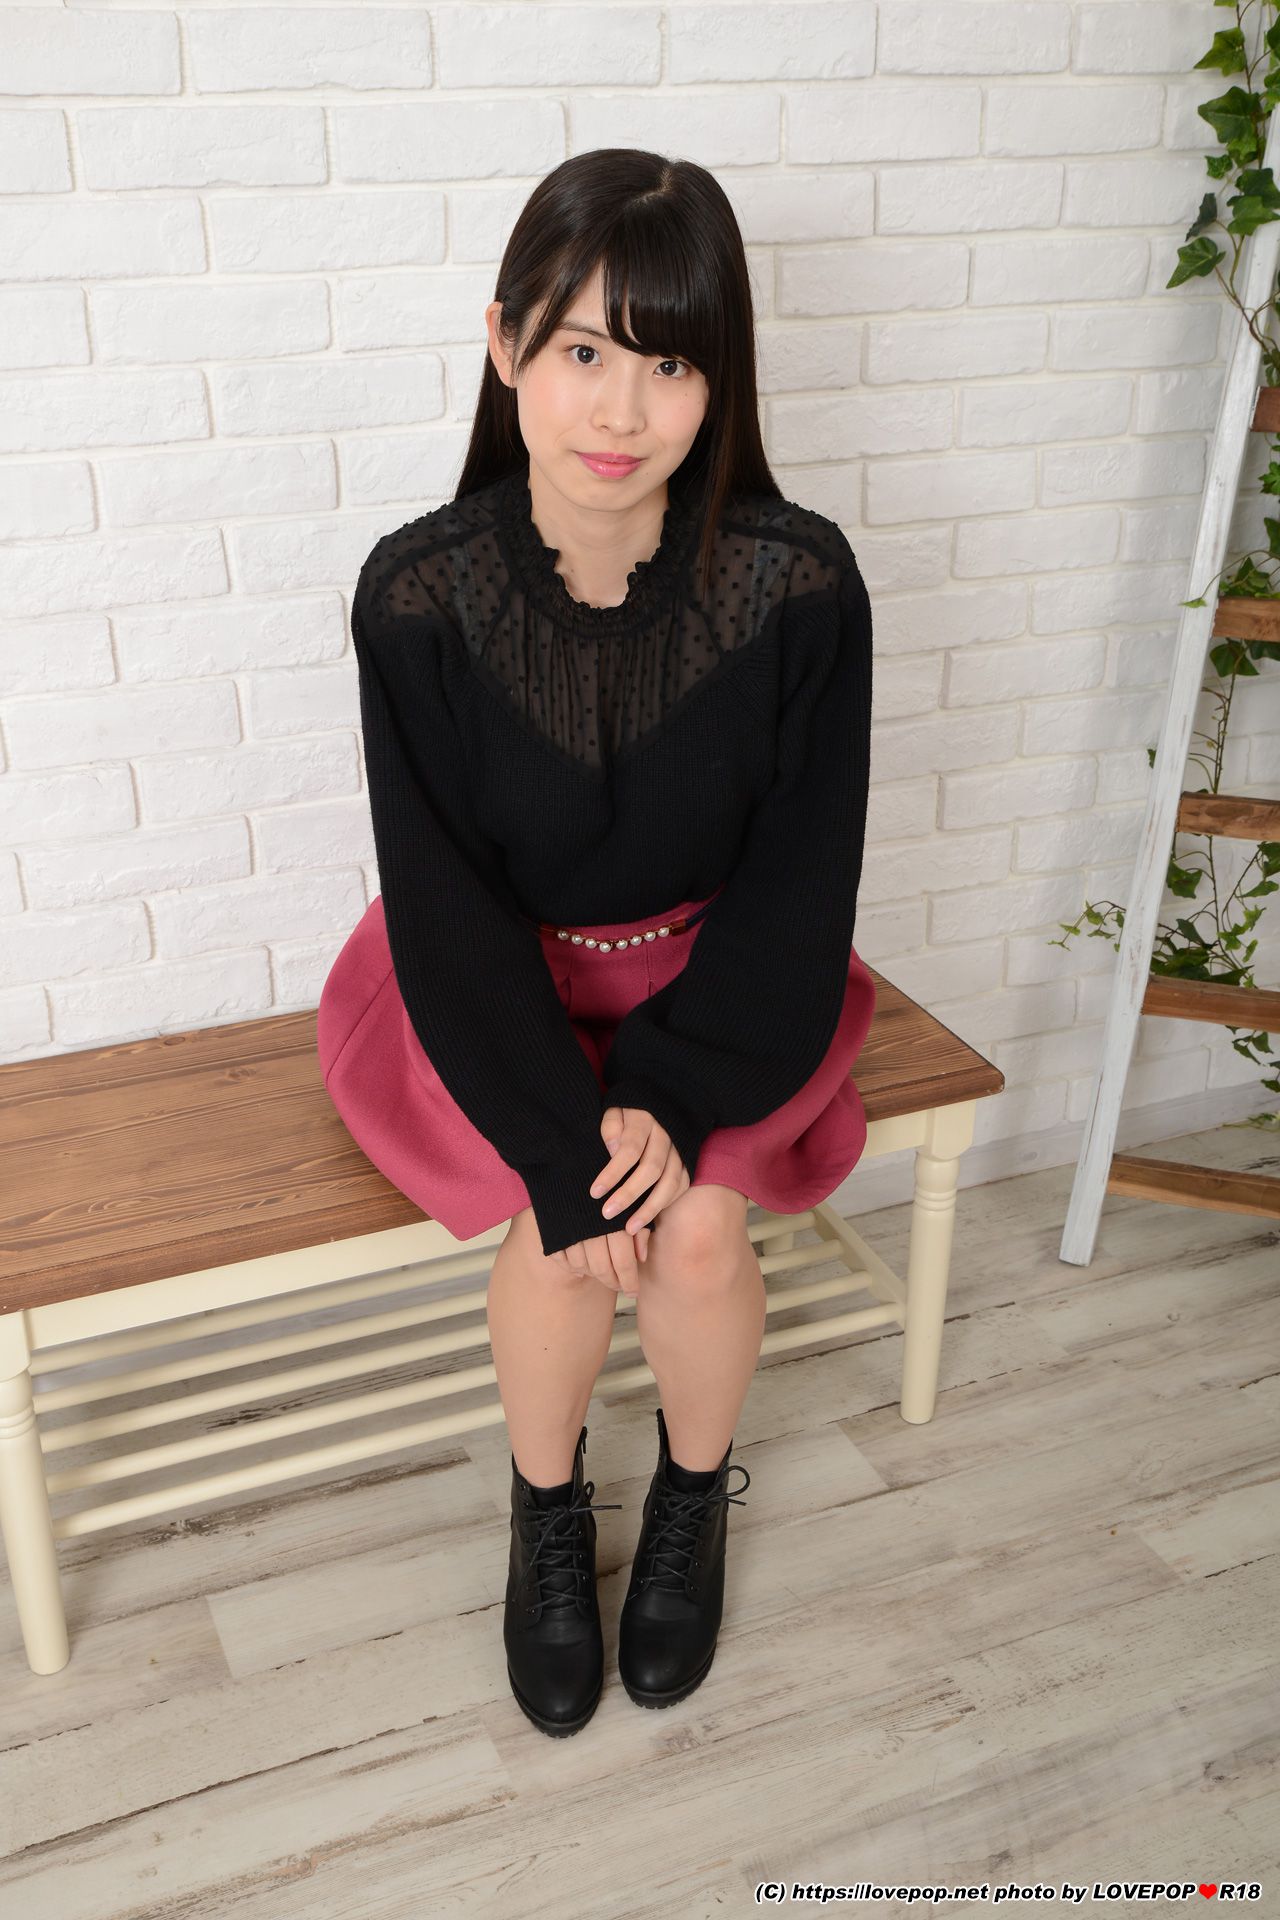 [LOVEPOP] Riina Aizawa 逢沢りいな Photoset 05/(45P)